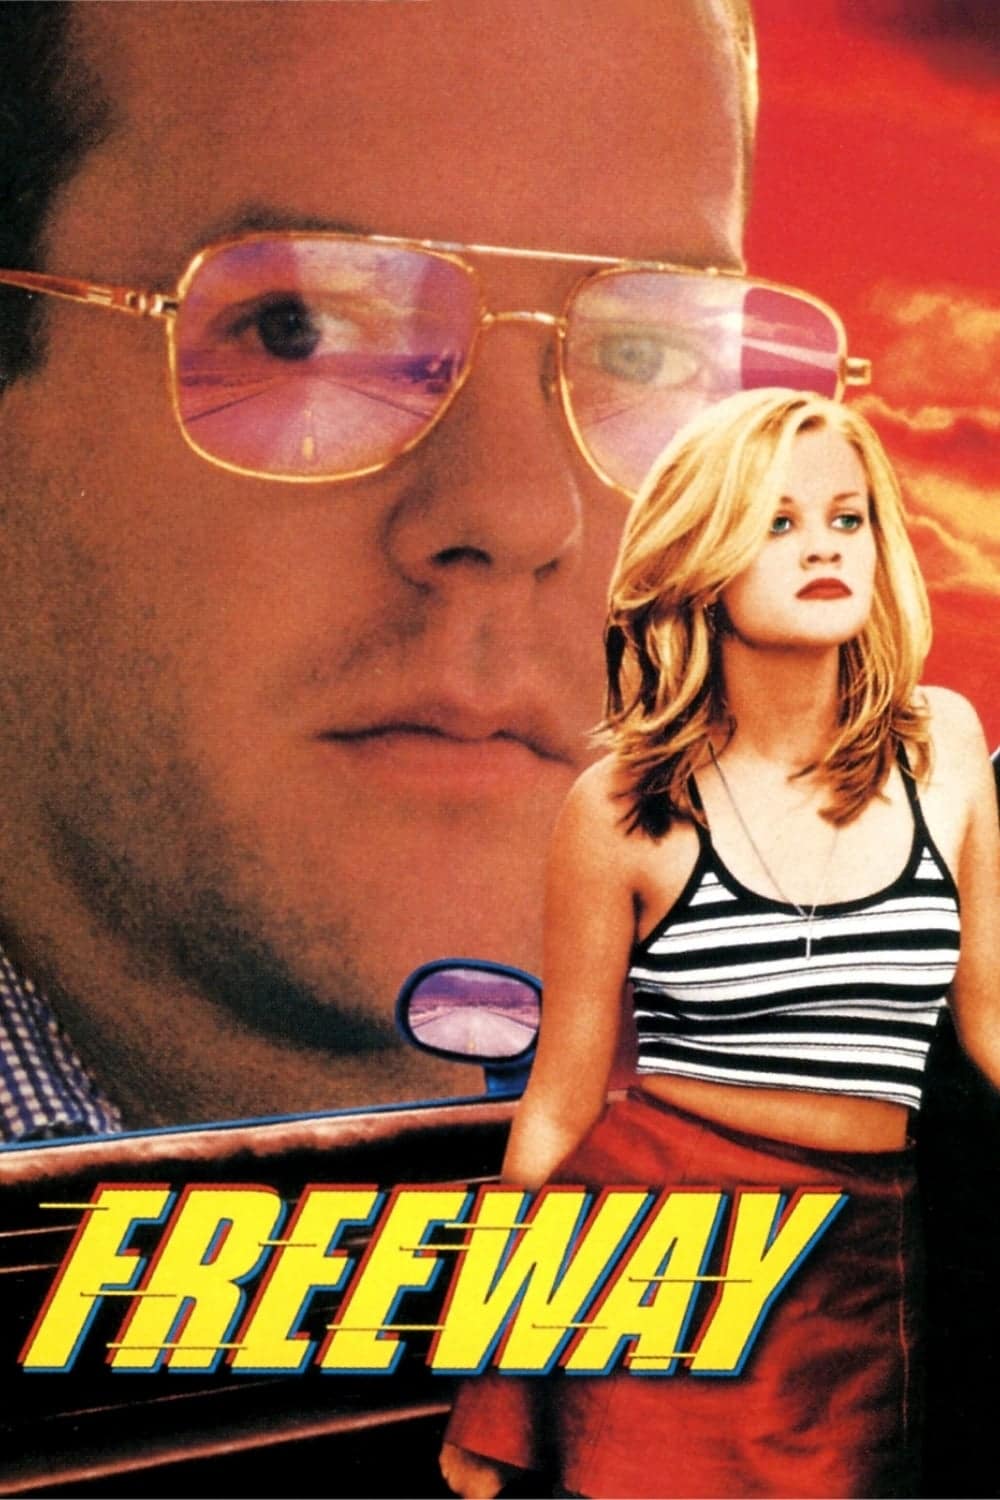 Plakat von "Freeway"